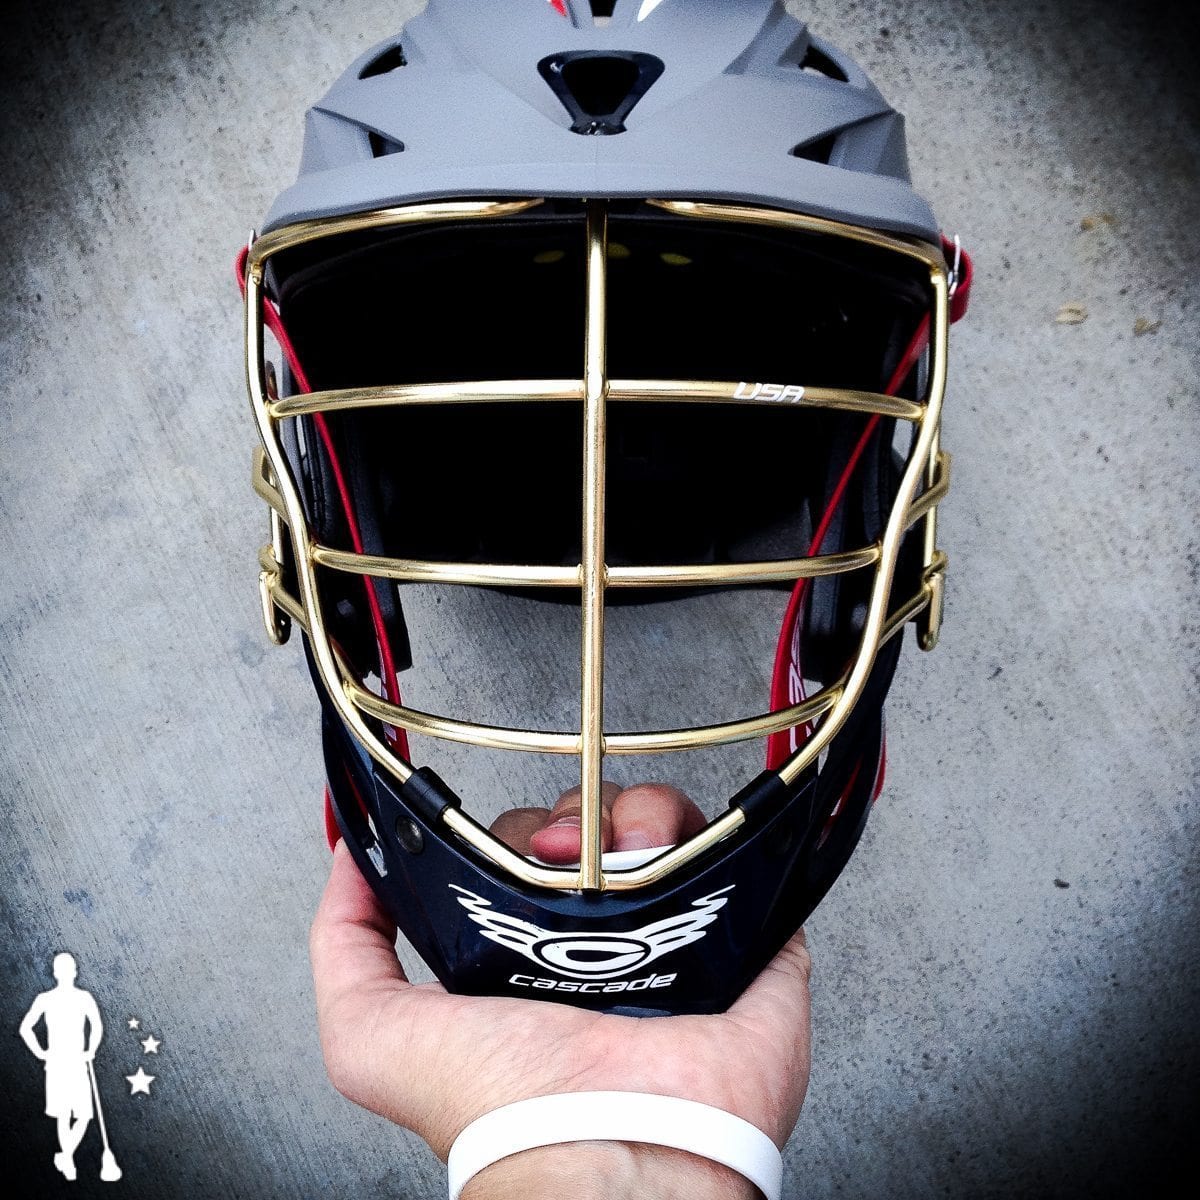 2014 Team USA Lacrosse Helmet